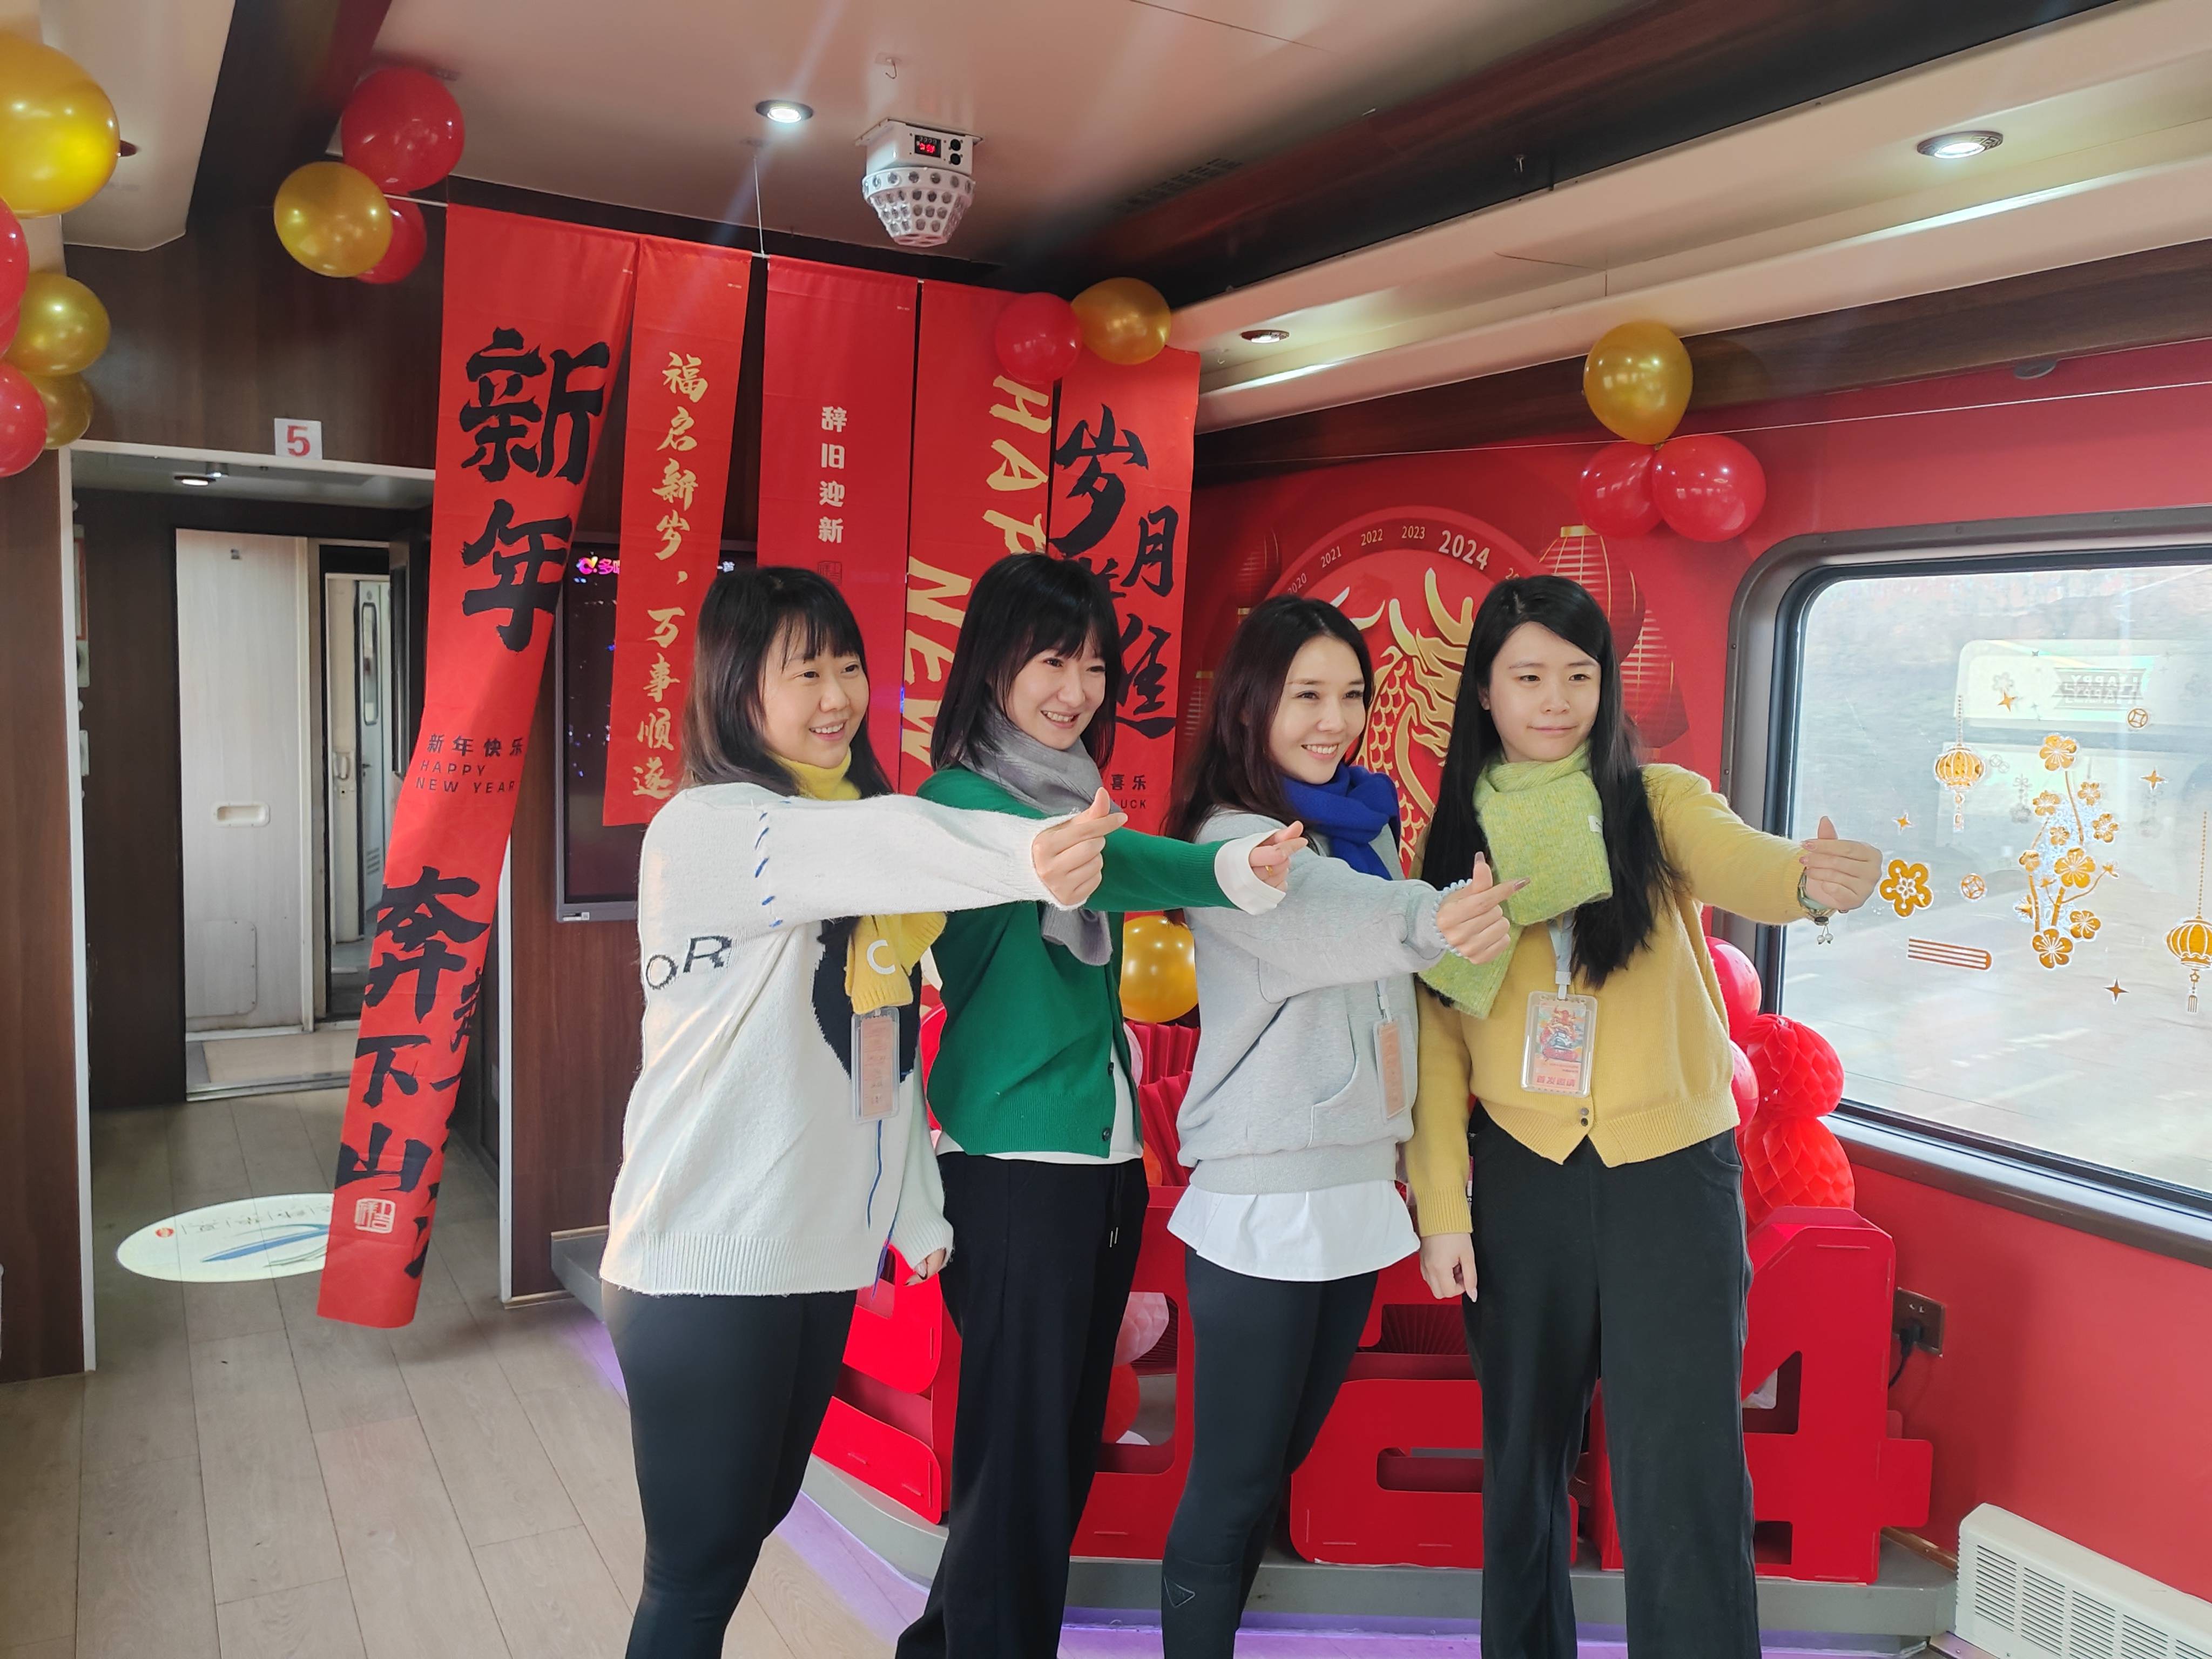 旅游:旅游 | “文交旅”融合 环秦岭旅游专列提供陕西旅游新选择